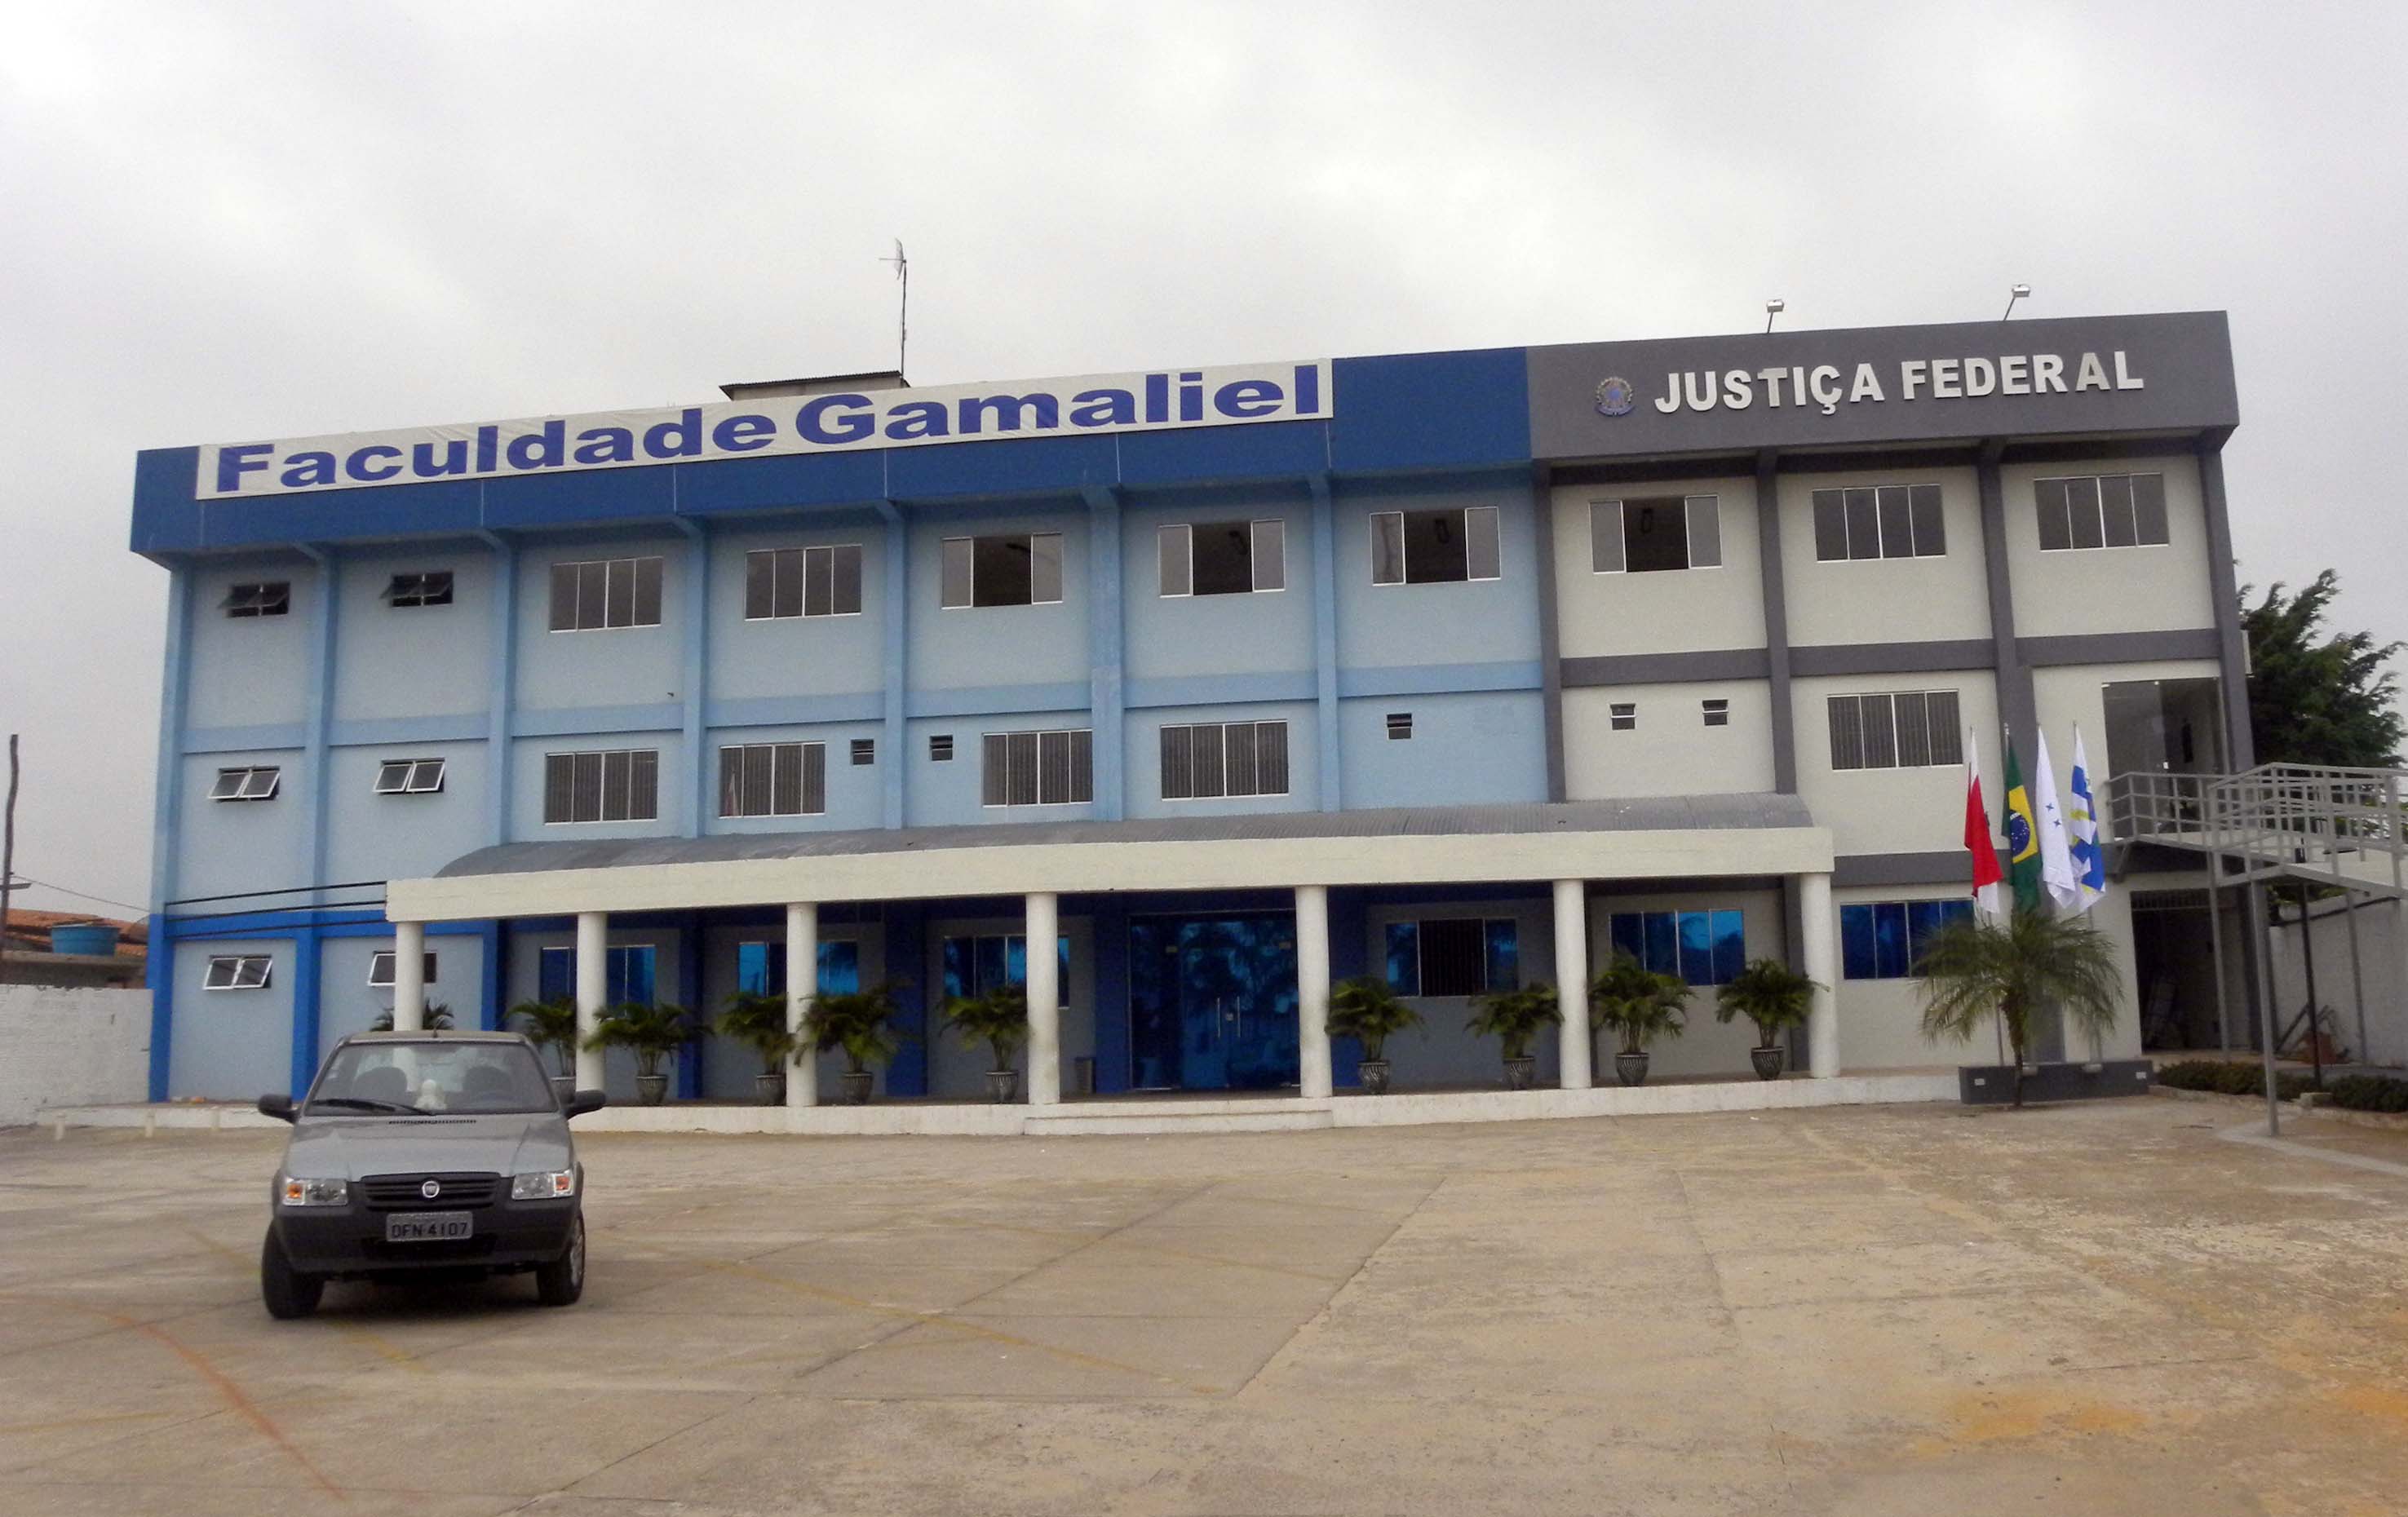 Em Turucuí, o mutirão será na Faculdade Gamaliel, em instalações próximas à Justiça Federal